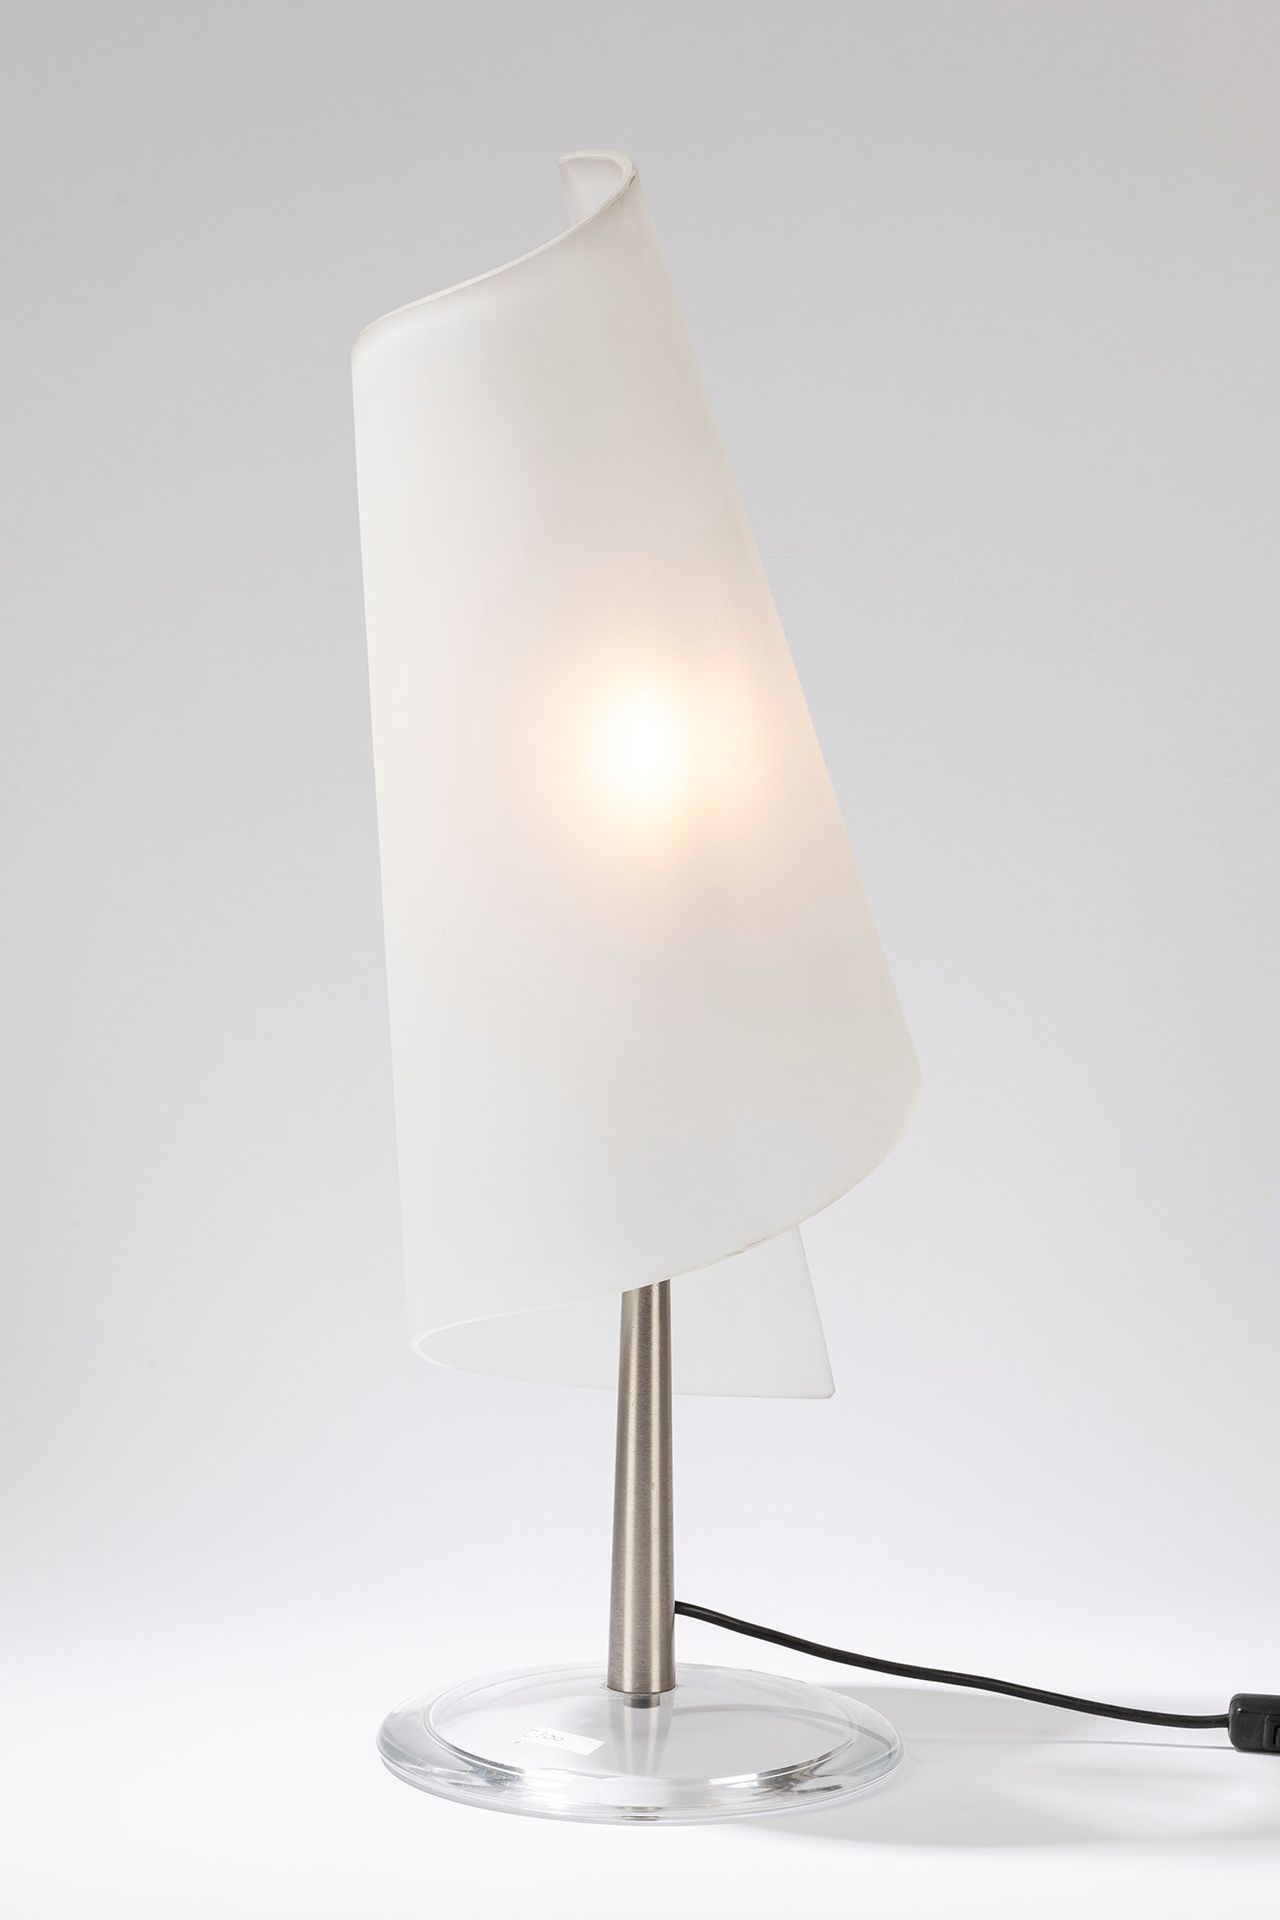 ITALIAN MANUFACTURE Lampe de table, période 70's

cm h 70 x 23
avec base en verr&hellip;